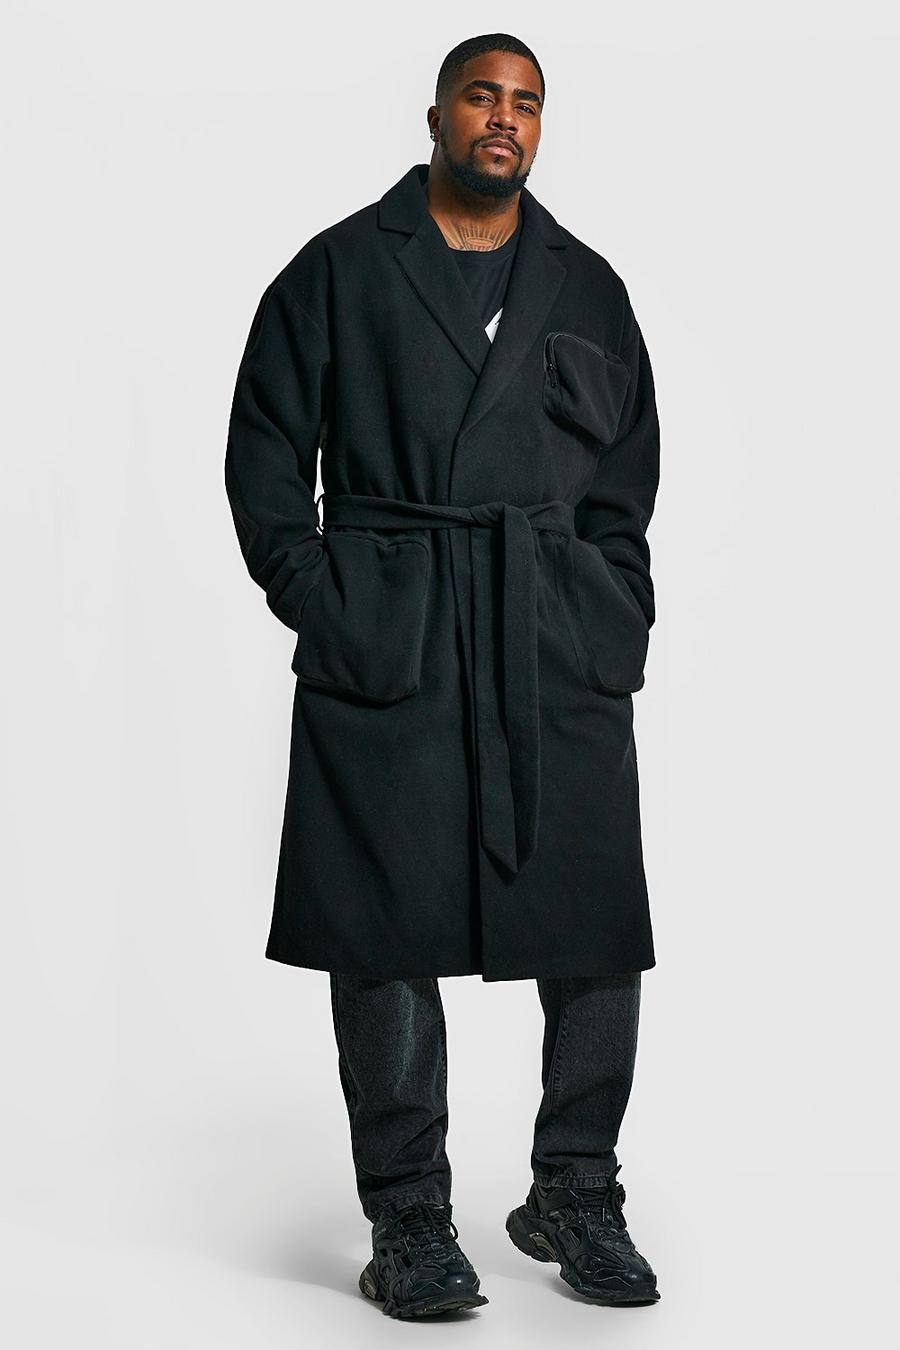 Black negro מעיל עליון בסגנון שימושי עם כיסי תלת-ממד וחגורה, מידות גדולות